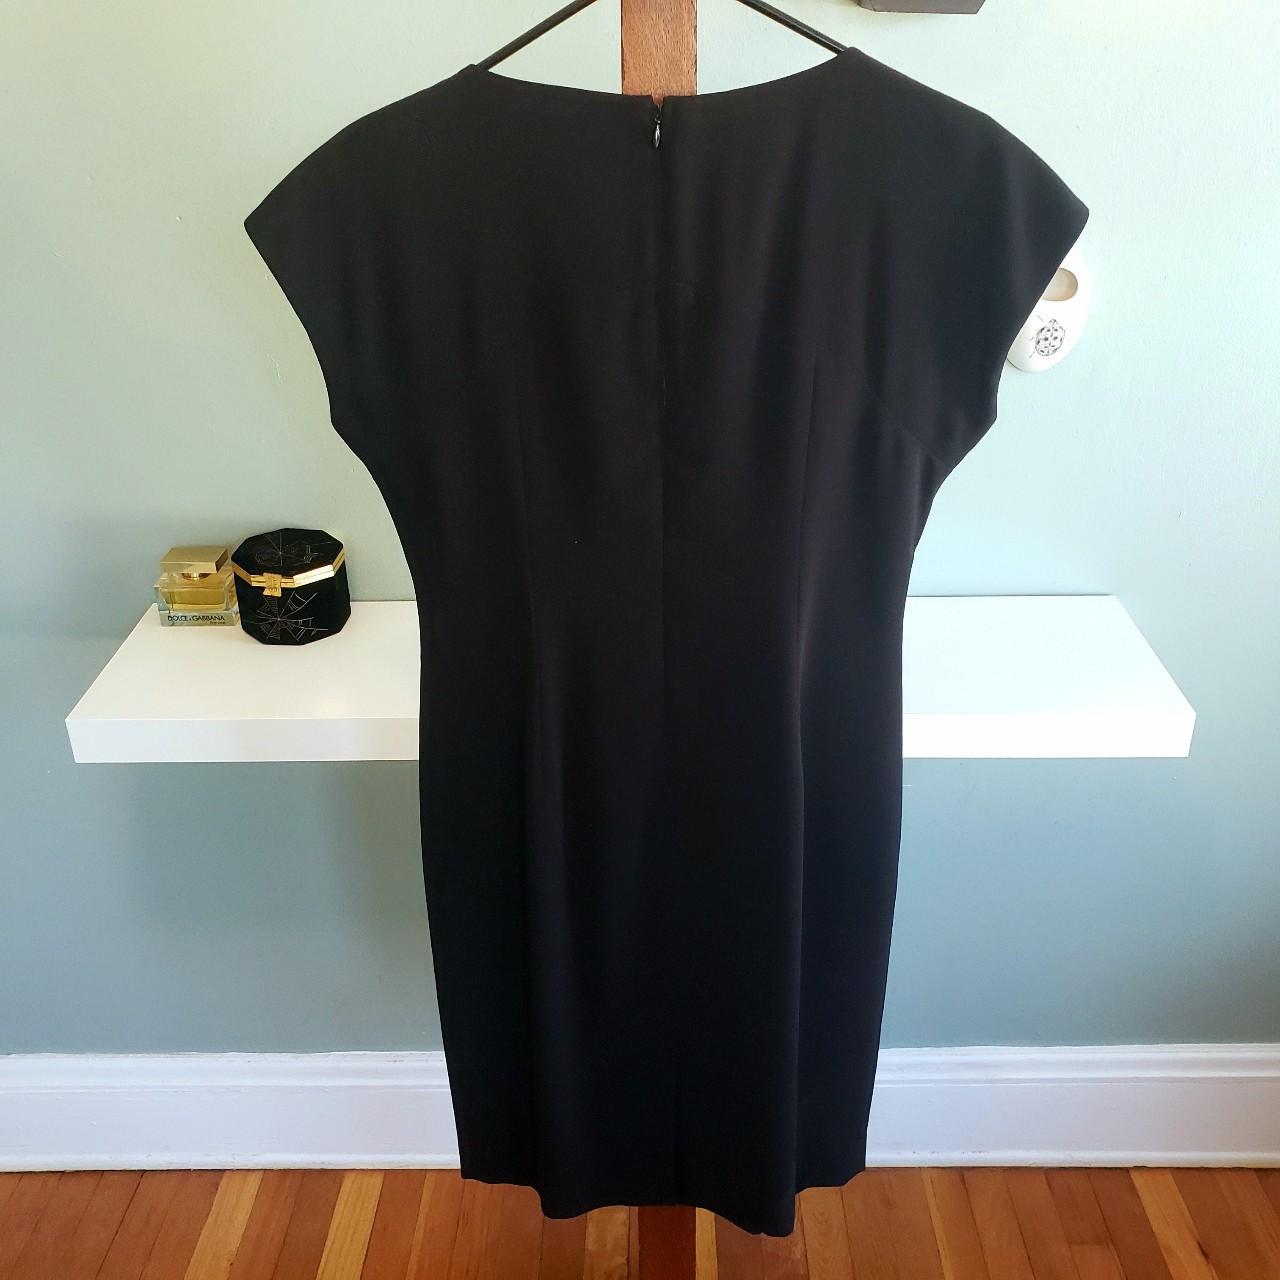 Product Image 4 - 90s Vintage Liz Claiborne Dress

Size